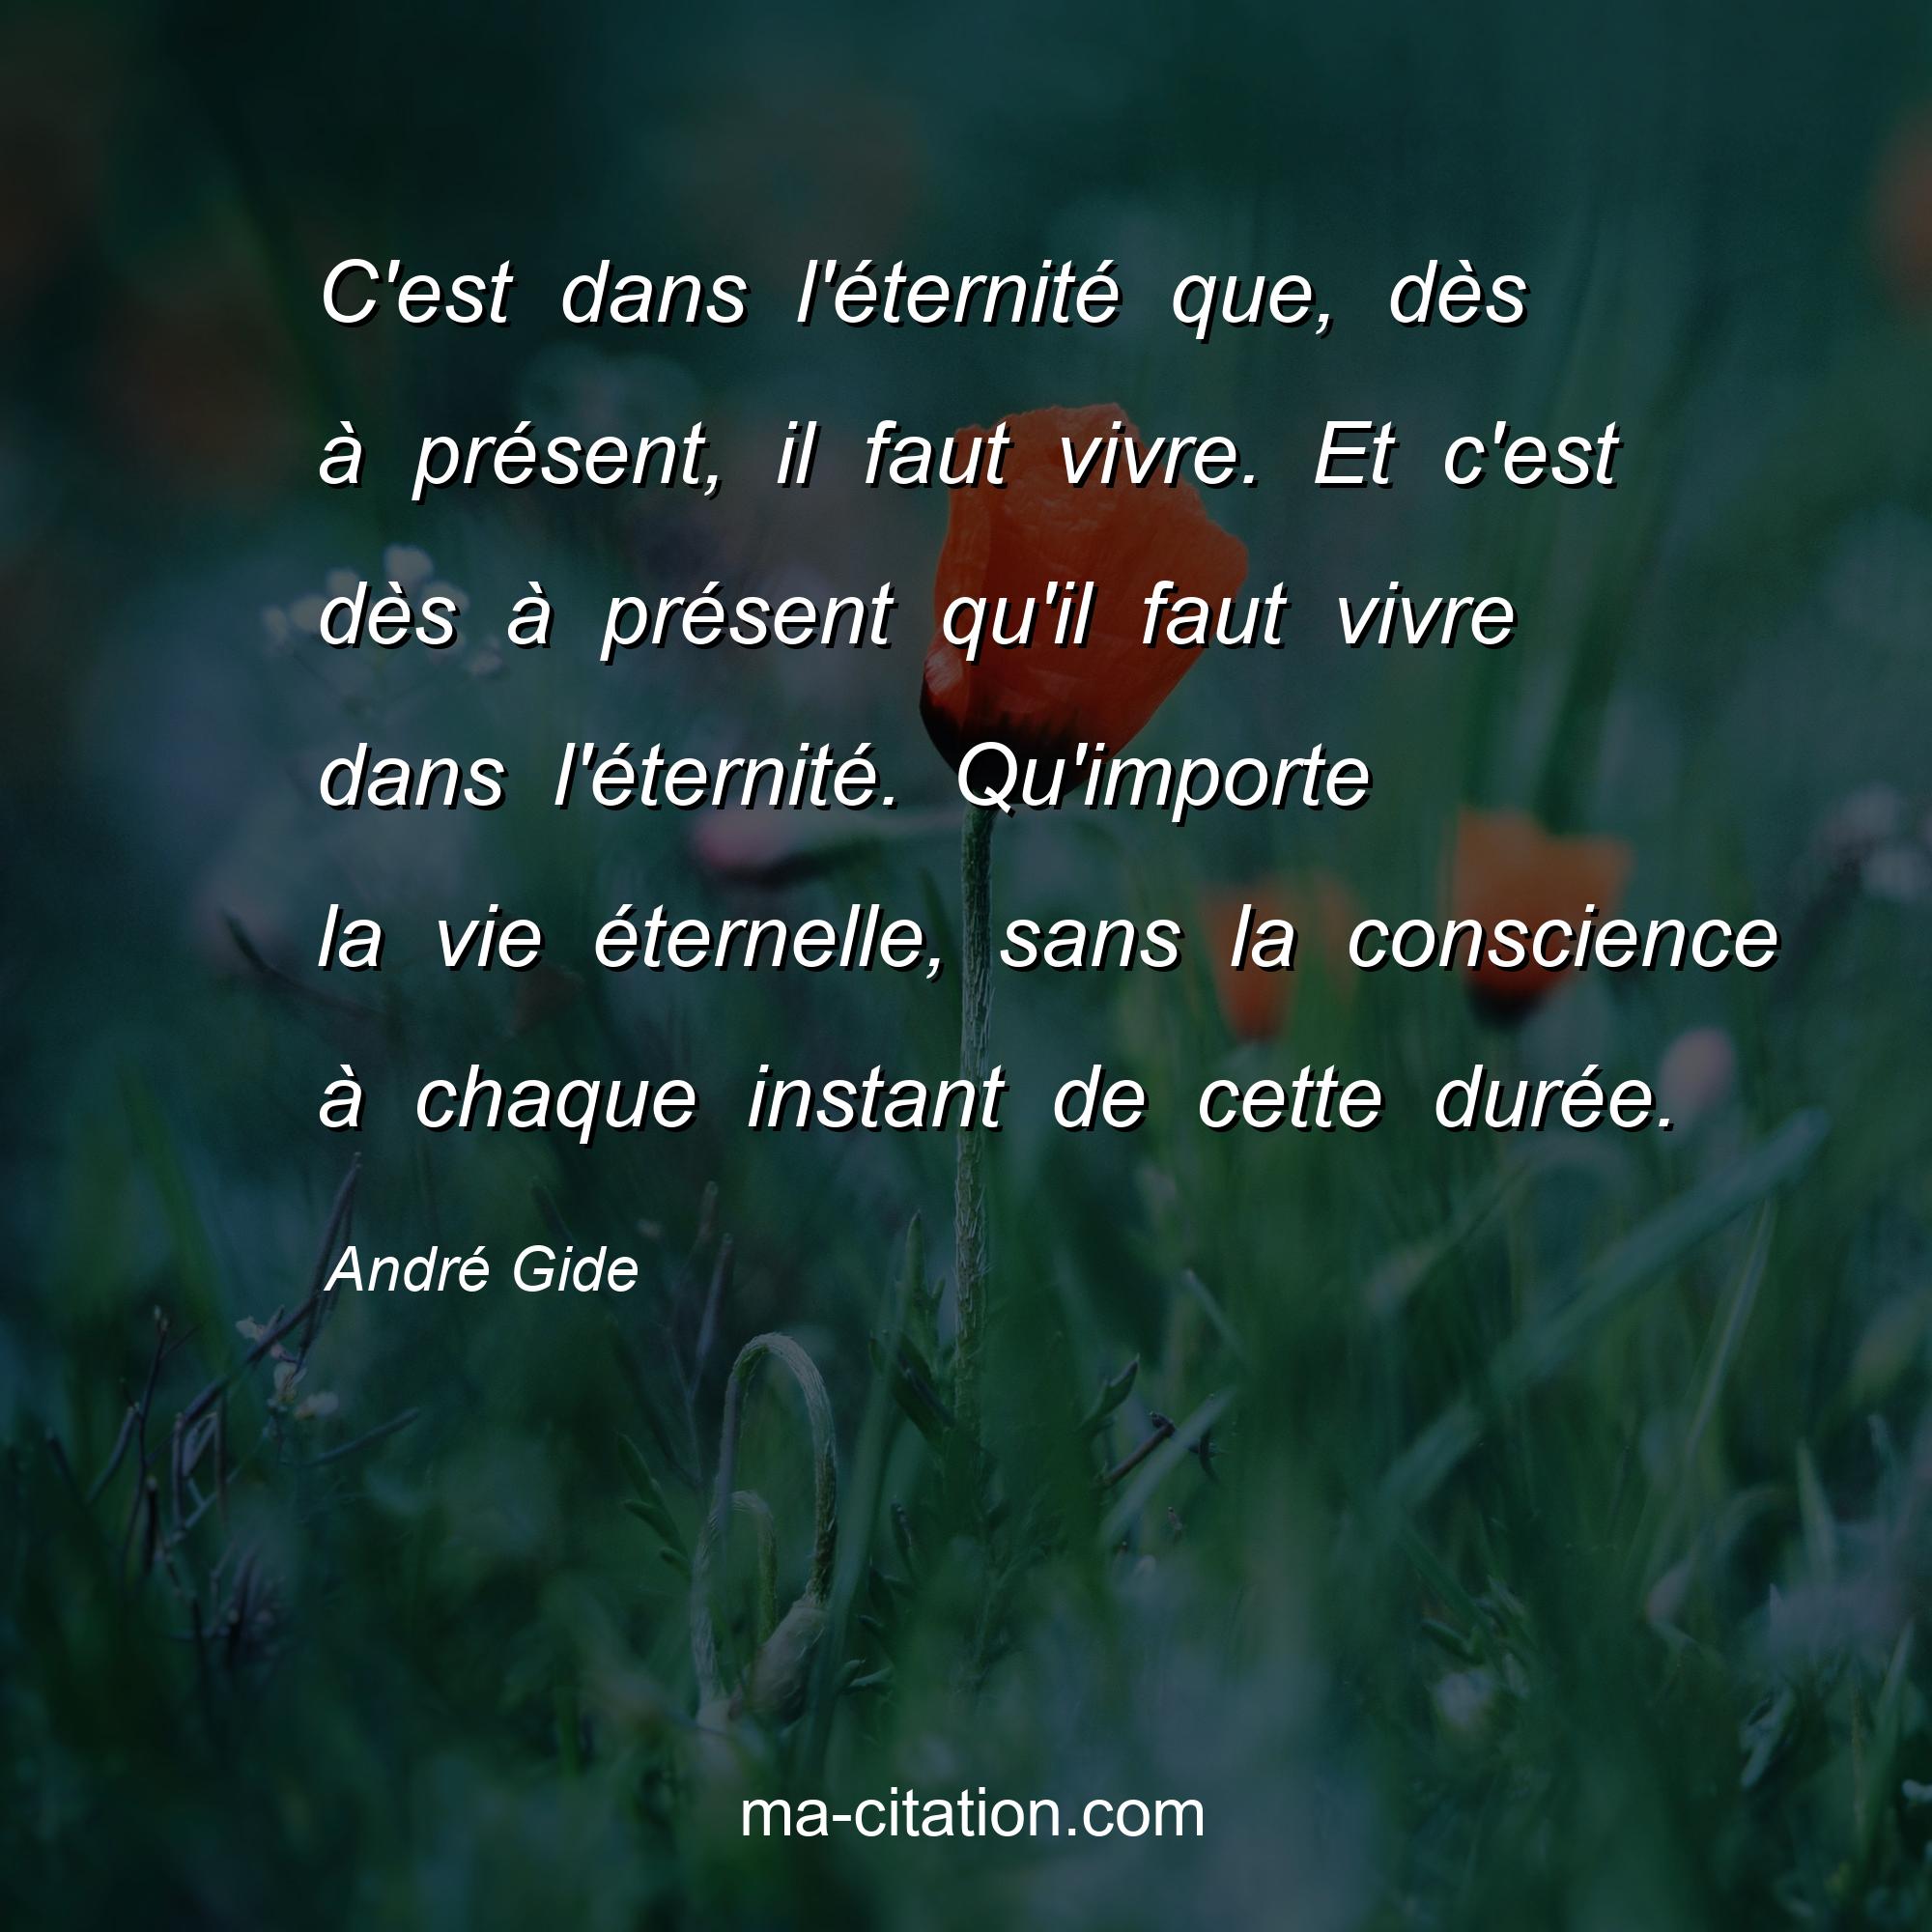 André Gide : C'est dans l'éternité que, dès à présent, il faut vivre. Et c'est dès à présent qu'il faut vivre dans l'éternité. Qu'importe la vie éternelle, sans la conscience à chaque instant de cette durée.